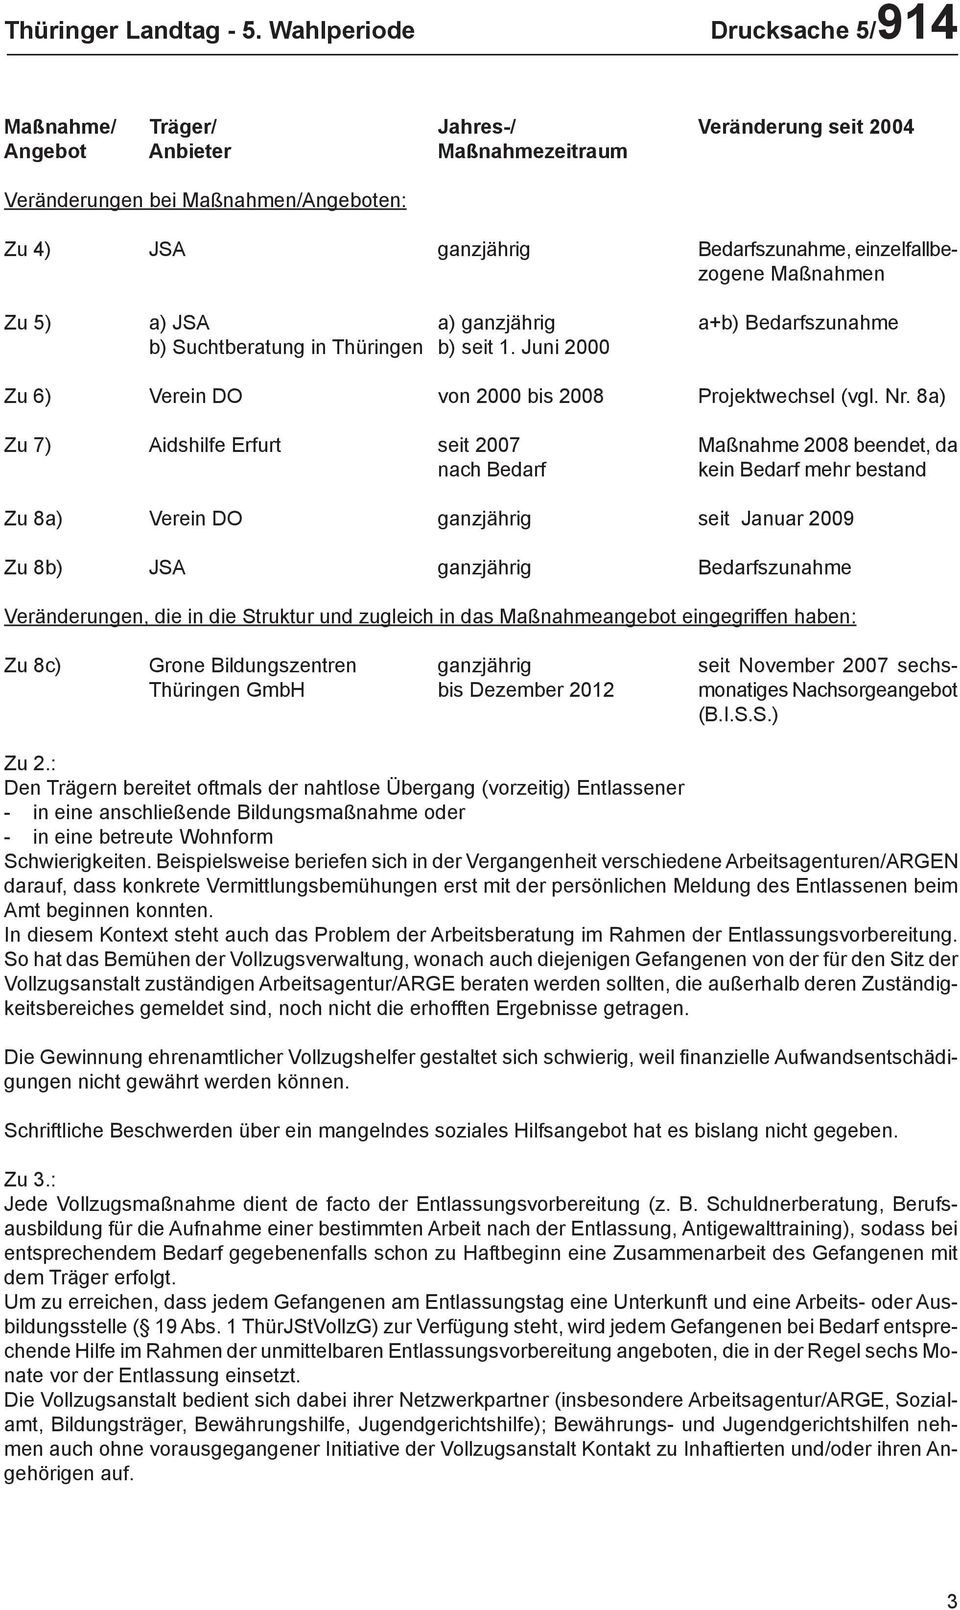 einzelfallbezogene Maßnahmen Zu 5) a) JSA a) ganzjährig a+b) Bedarfszunahme b) Suchtberatung in Thüringen b) seit 1. Juni 2000 Zu 6) Verein DO von 2000 bis 2008 Projektwechsel (vgl. Nr.